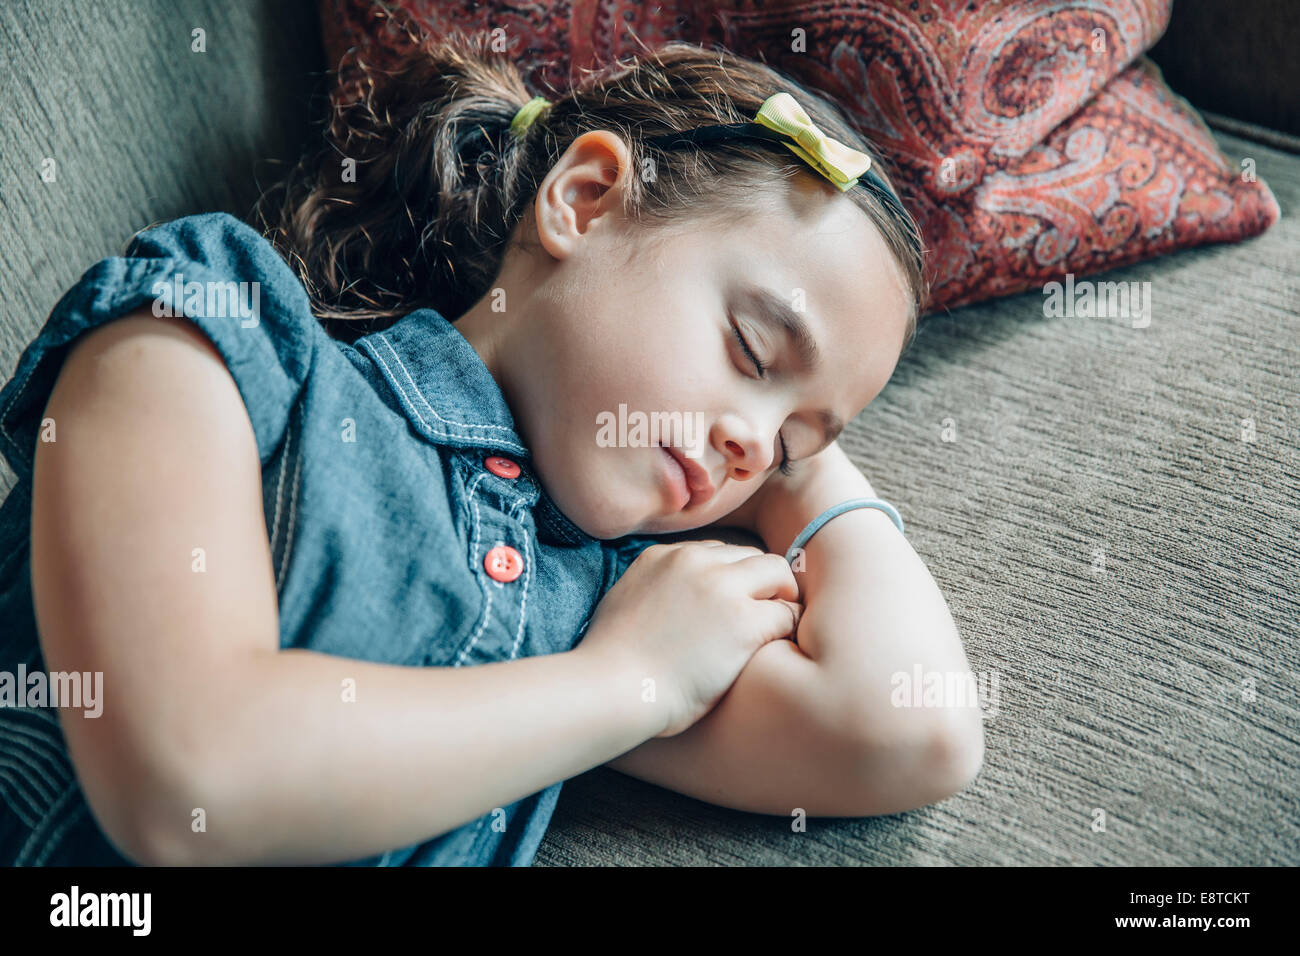 Mixed race girl sleeping on sofa Stock Photo